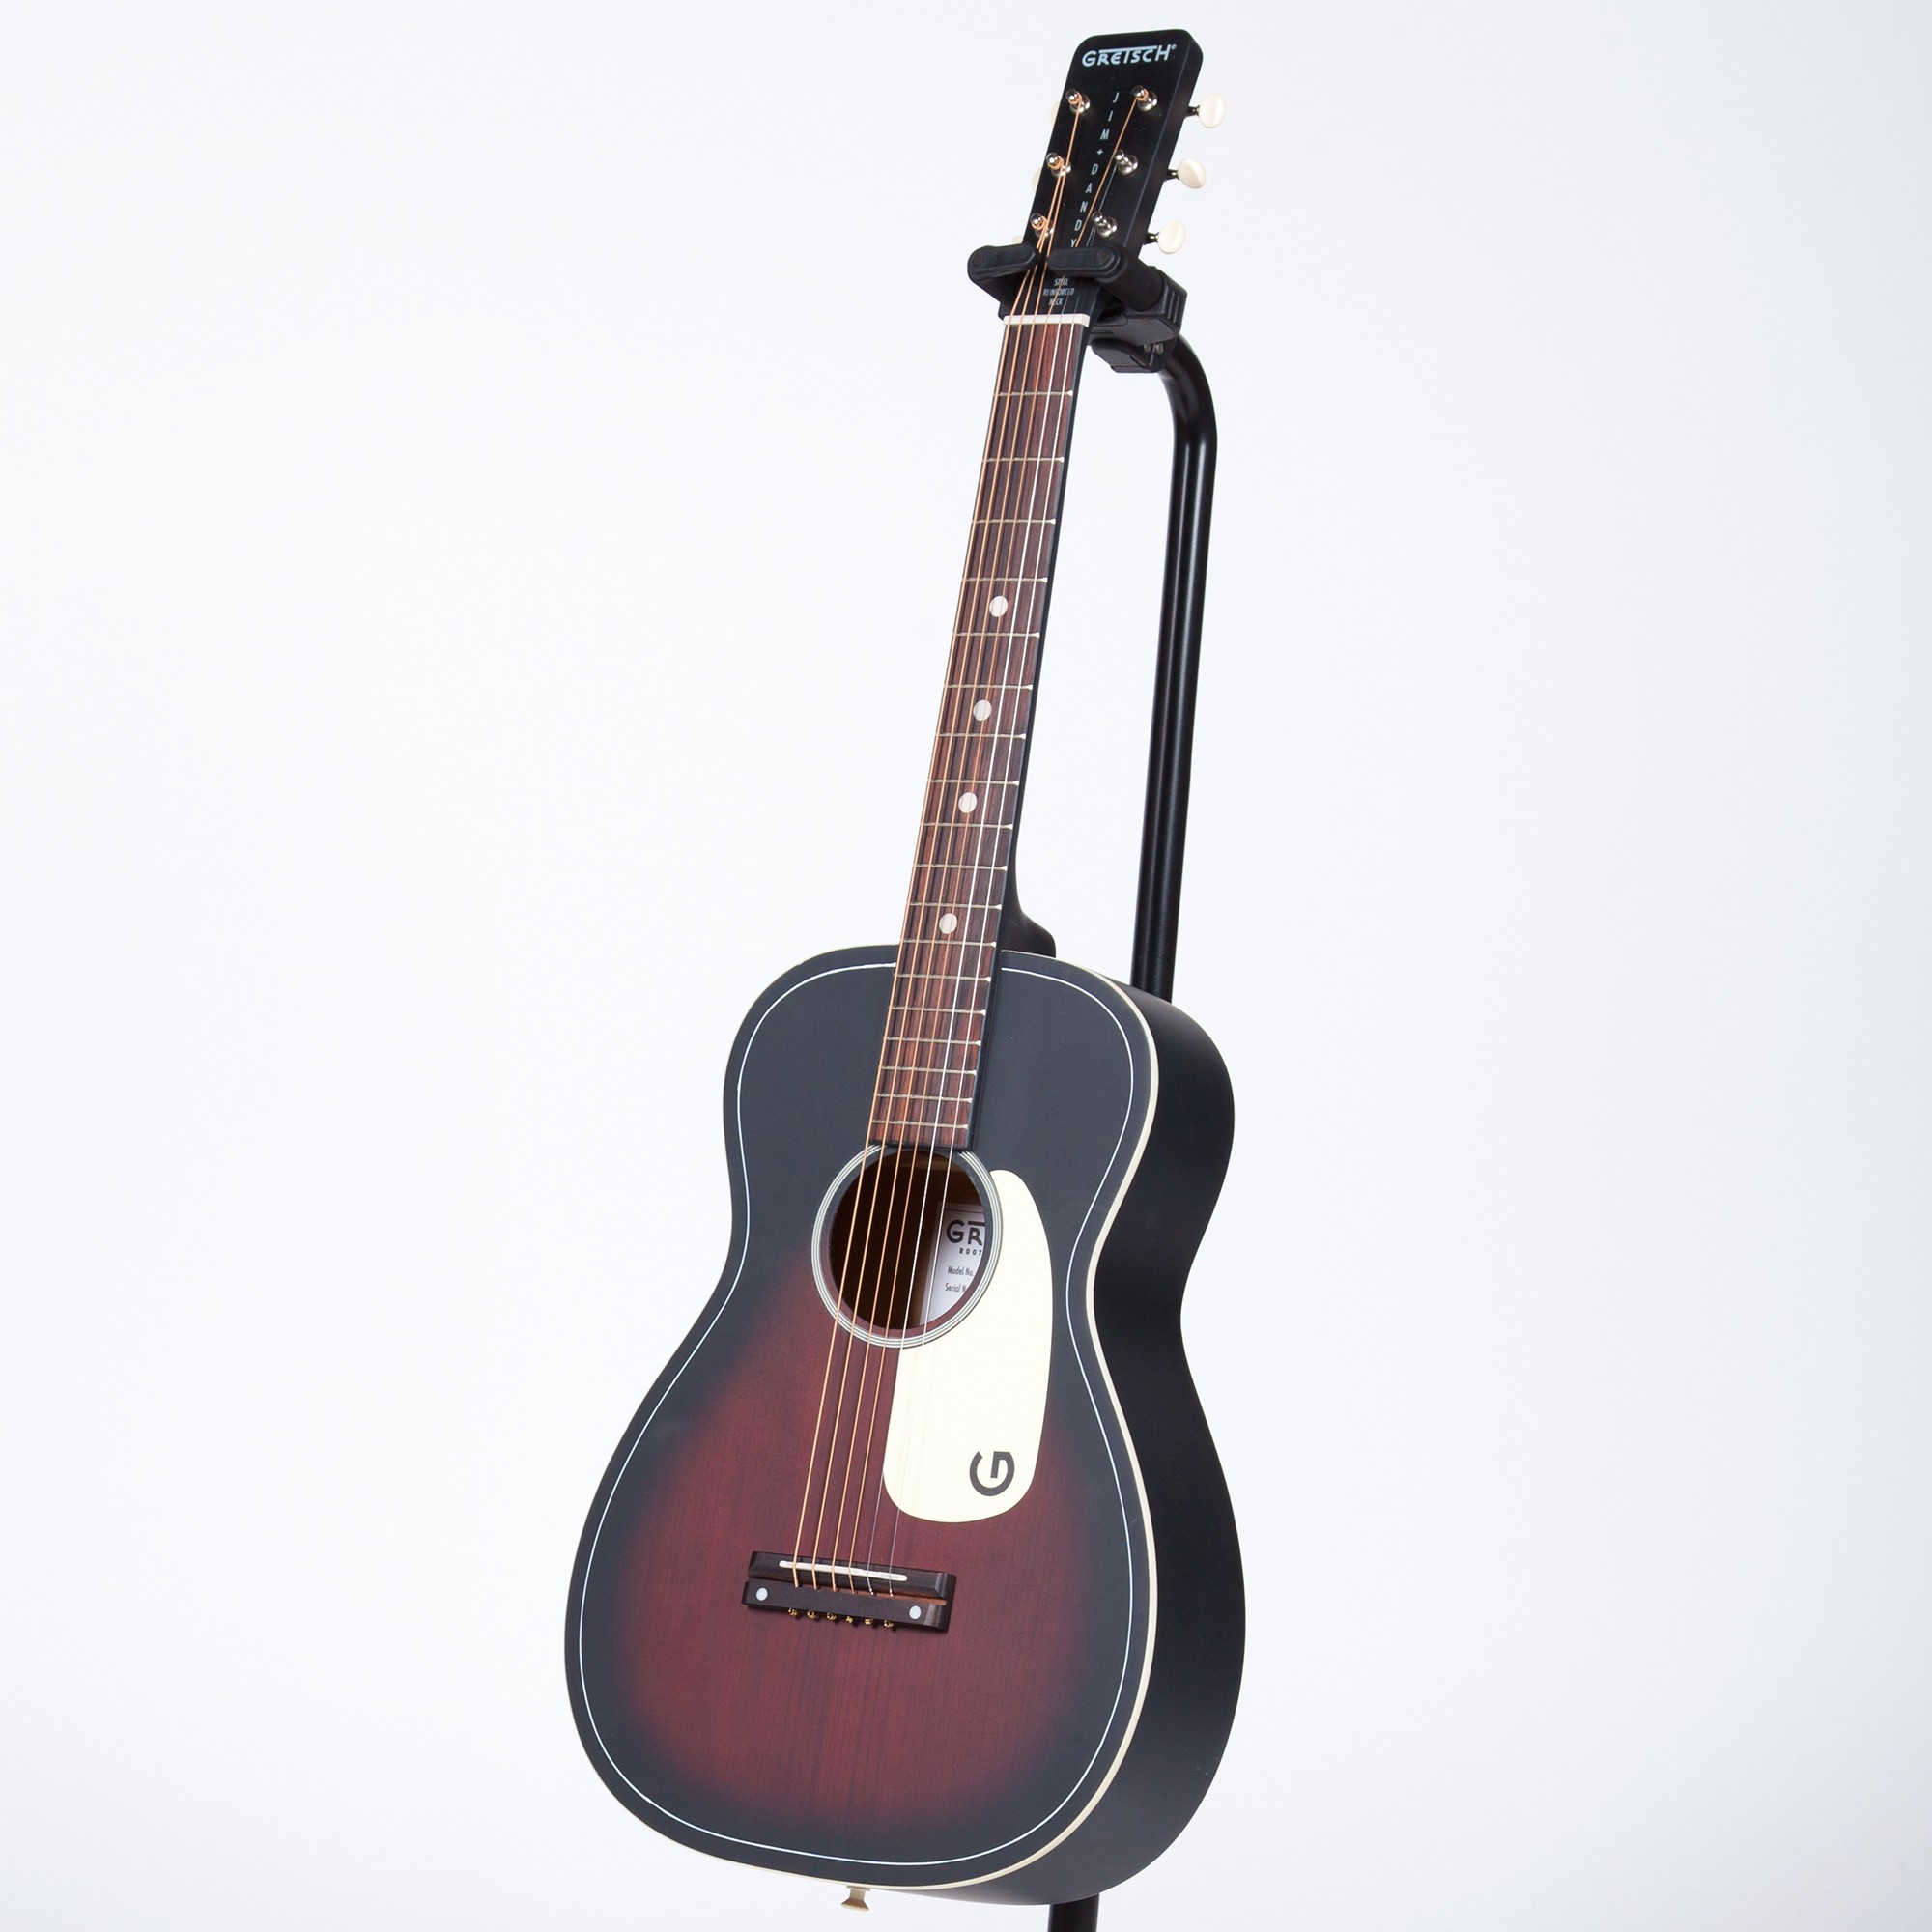 Gretsch G9500 Jim Dandy Flat Top Acoustic Guitar - 2 Color Sunburst ...